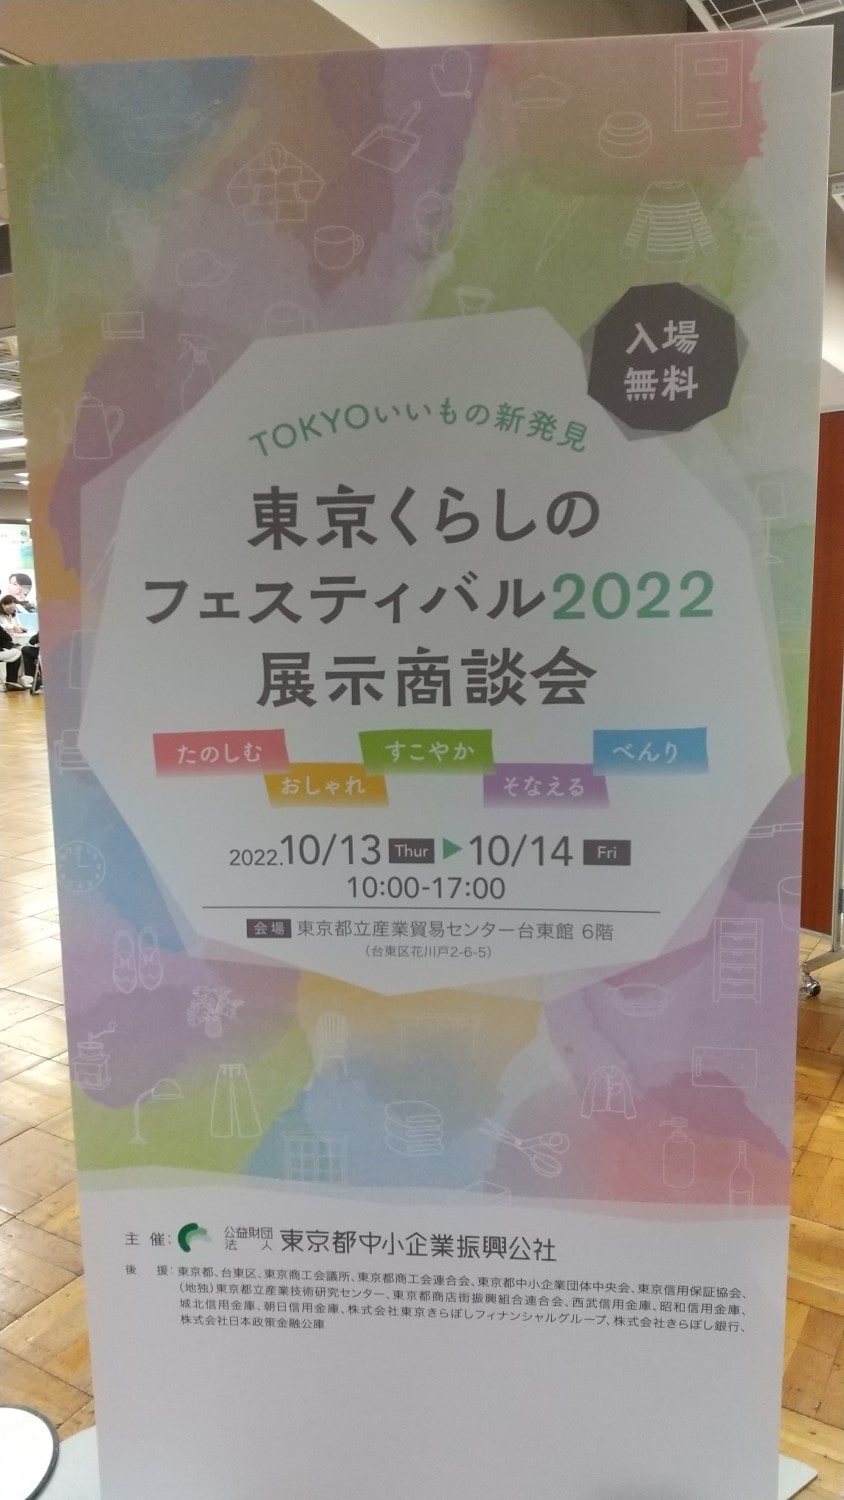 東京くらしのフェスティバル2022のポスター